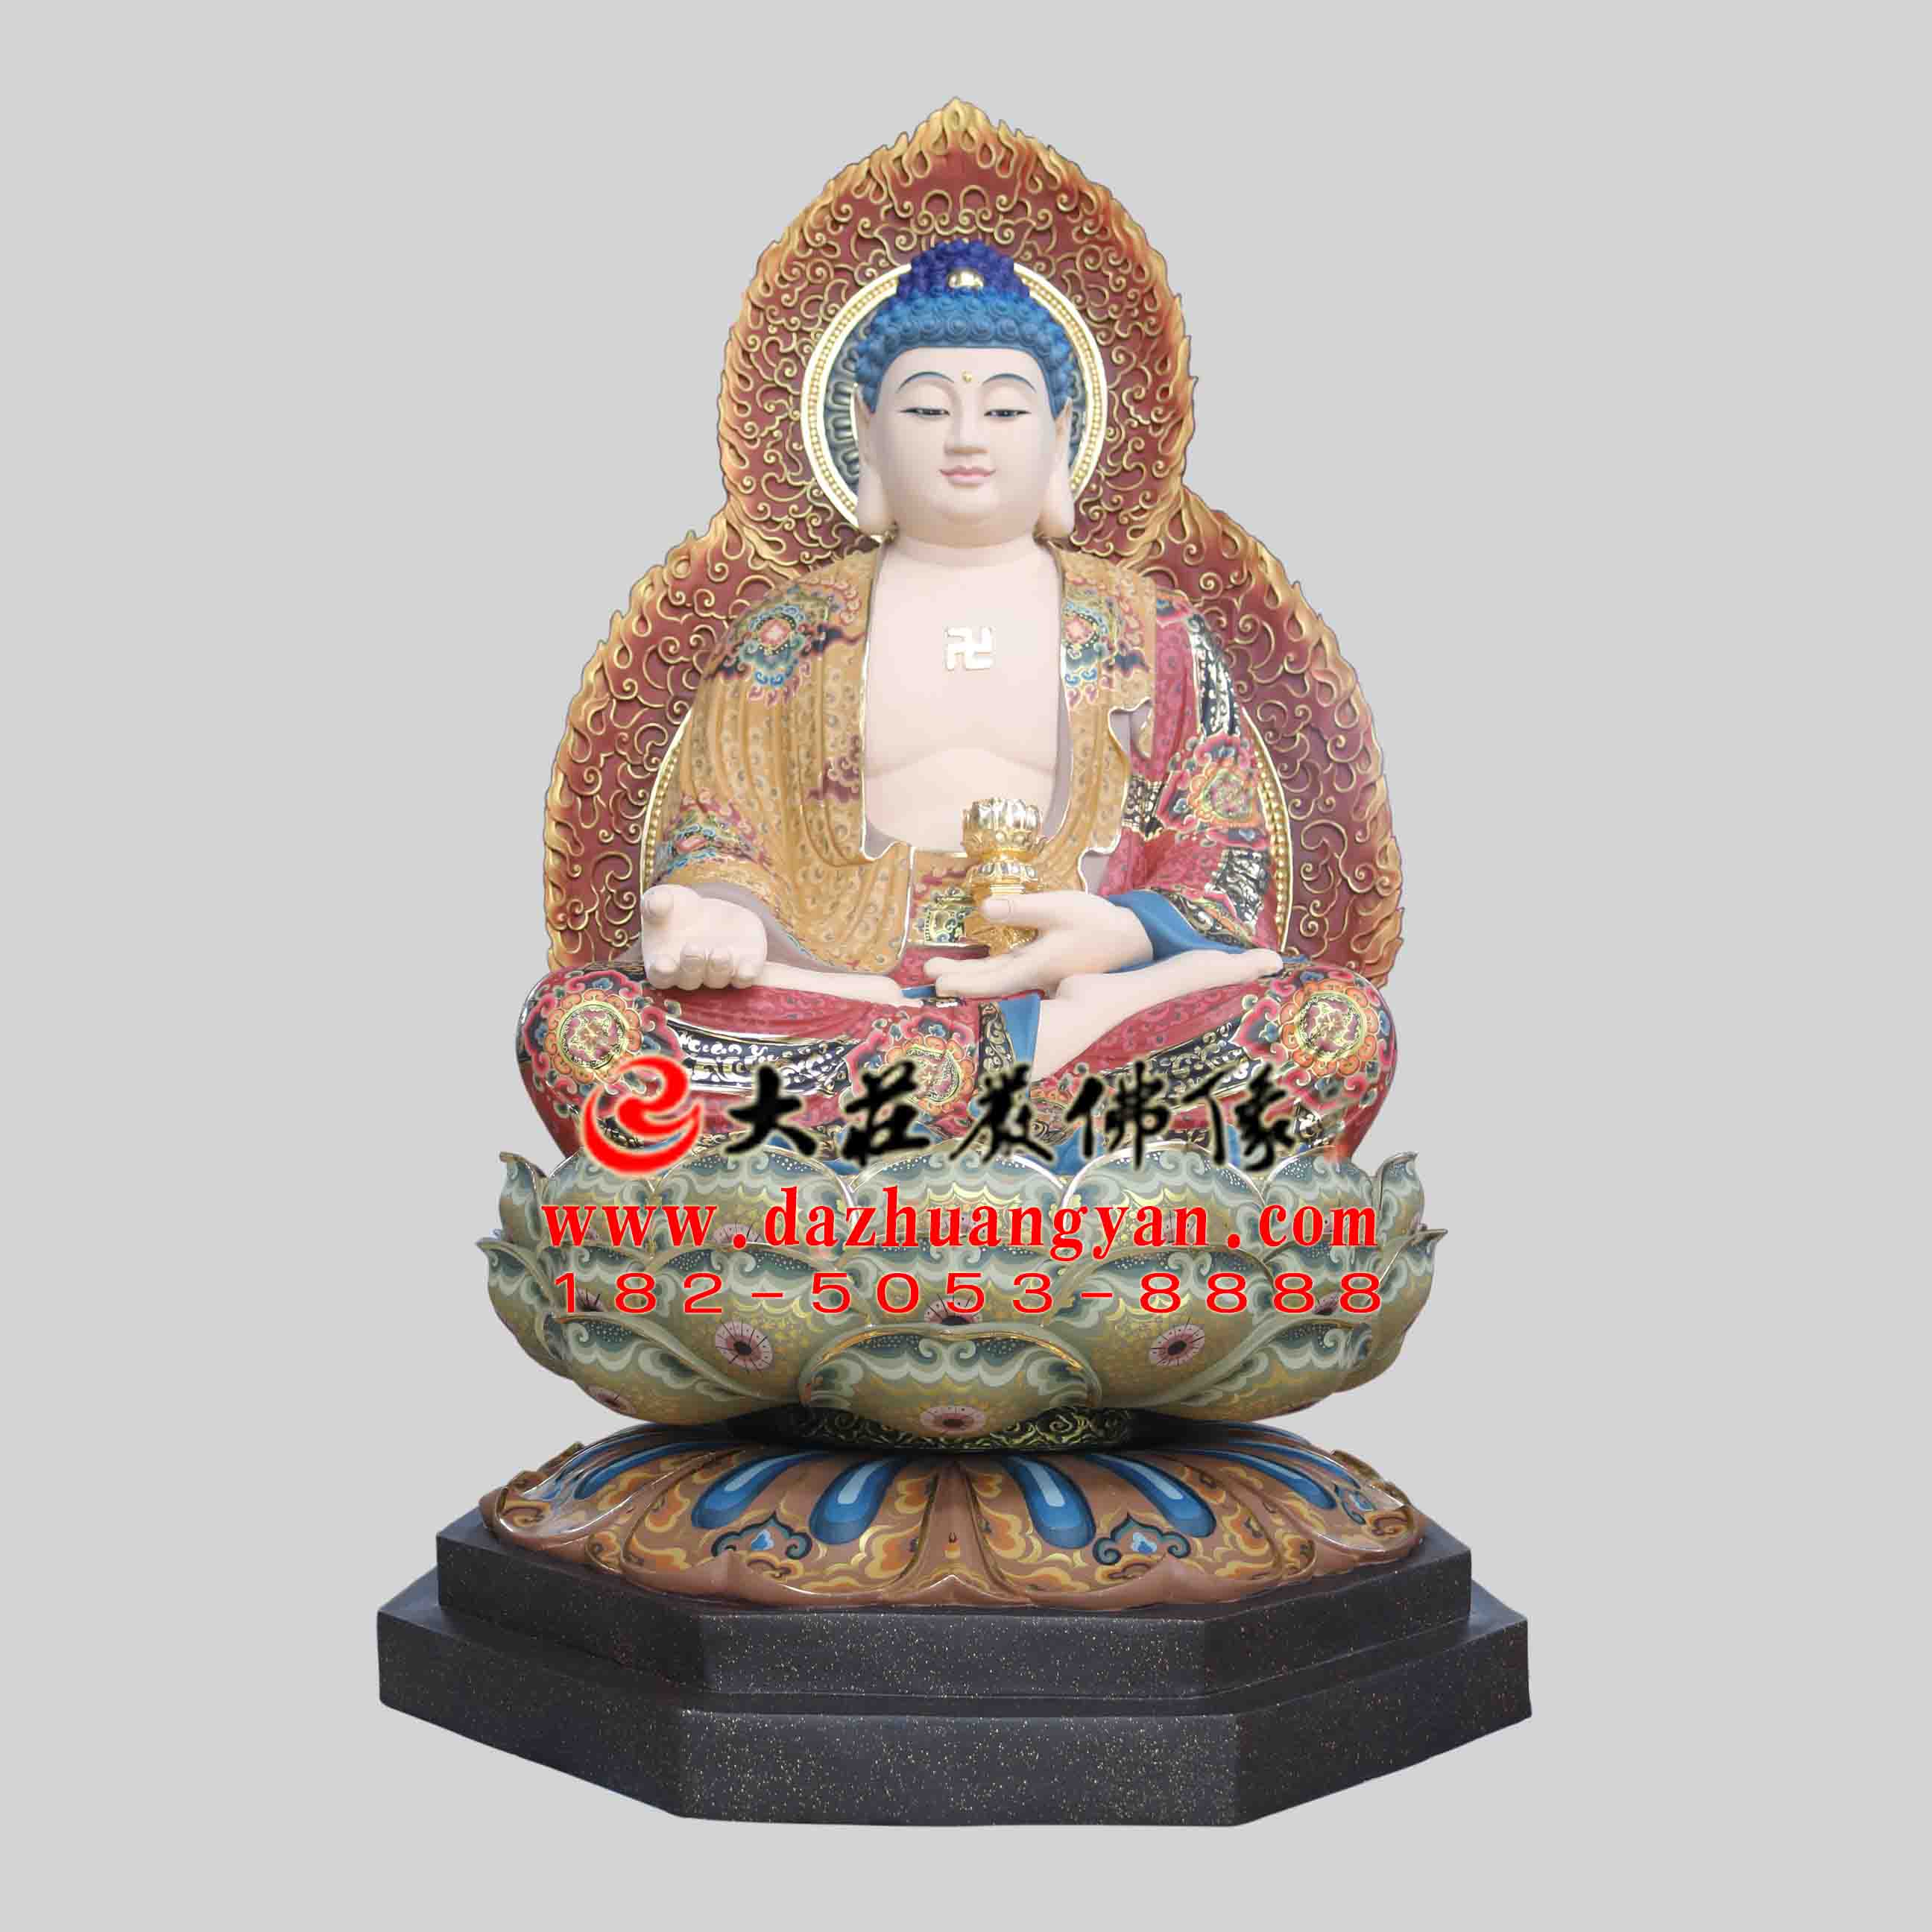 生漆脱胎西方三圣之阿弥陀佛塑像